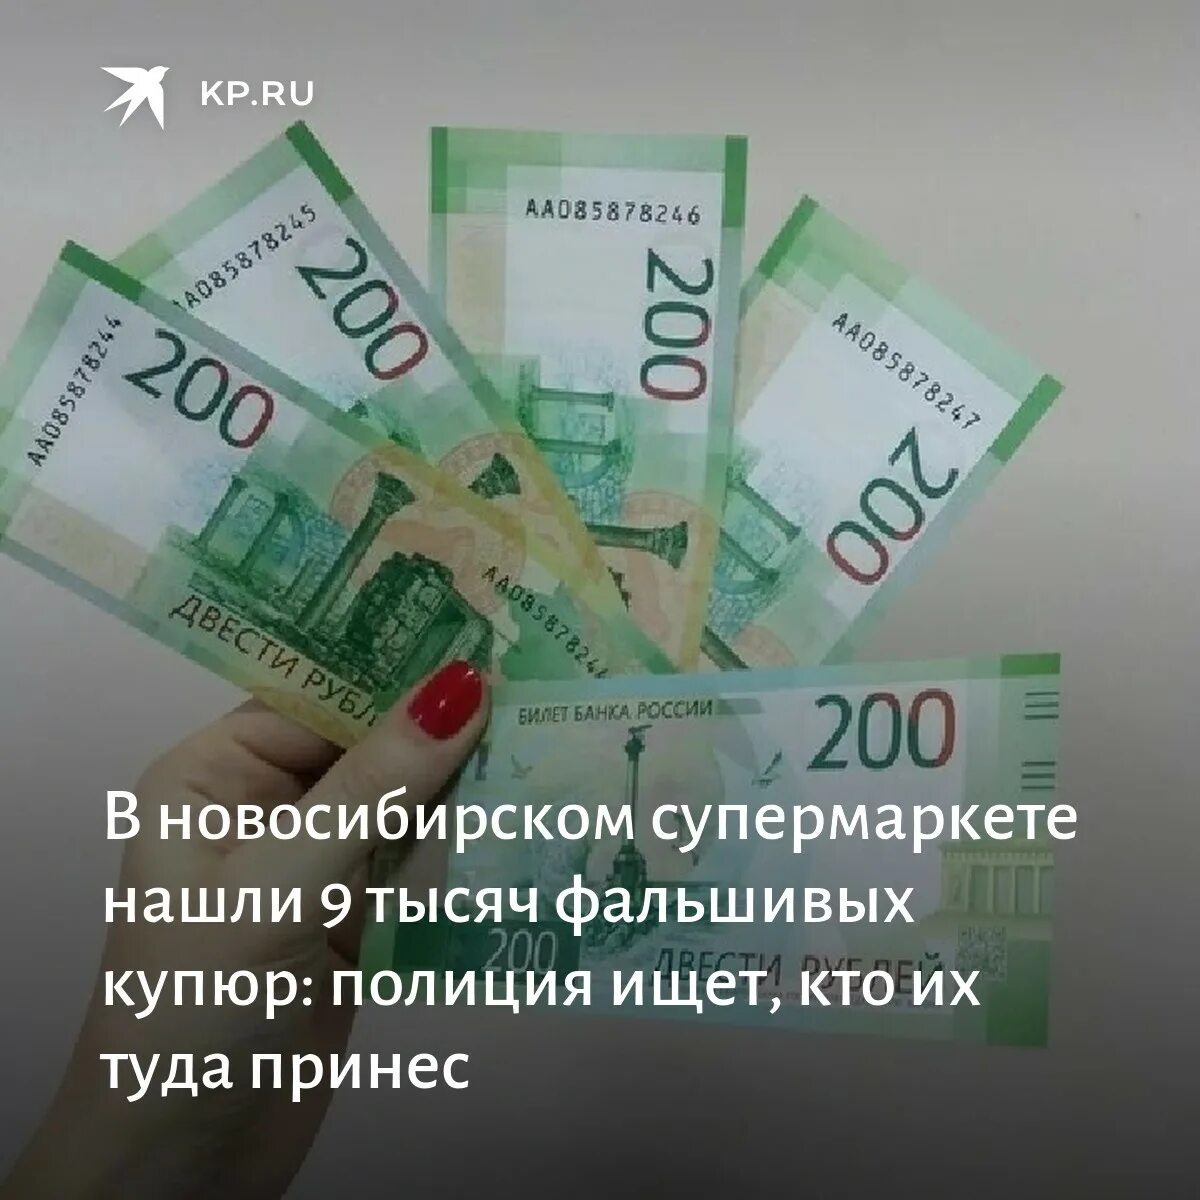 9 Тысяч рублей. Девять тысяч. 9 Тысяч рублей в банке. Фальшивые купюры Новосибирск осуждены.